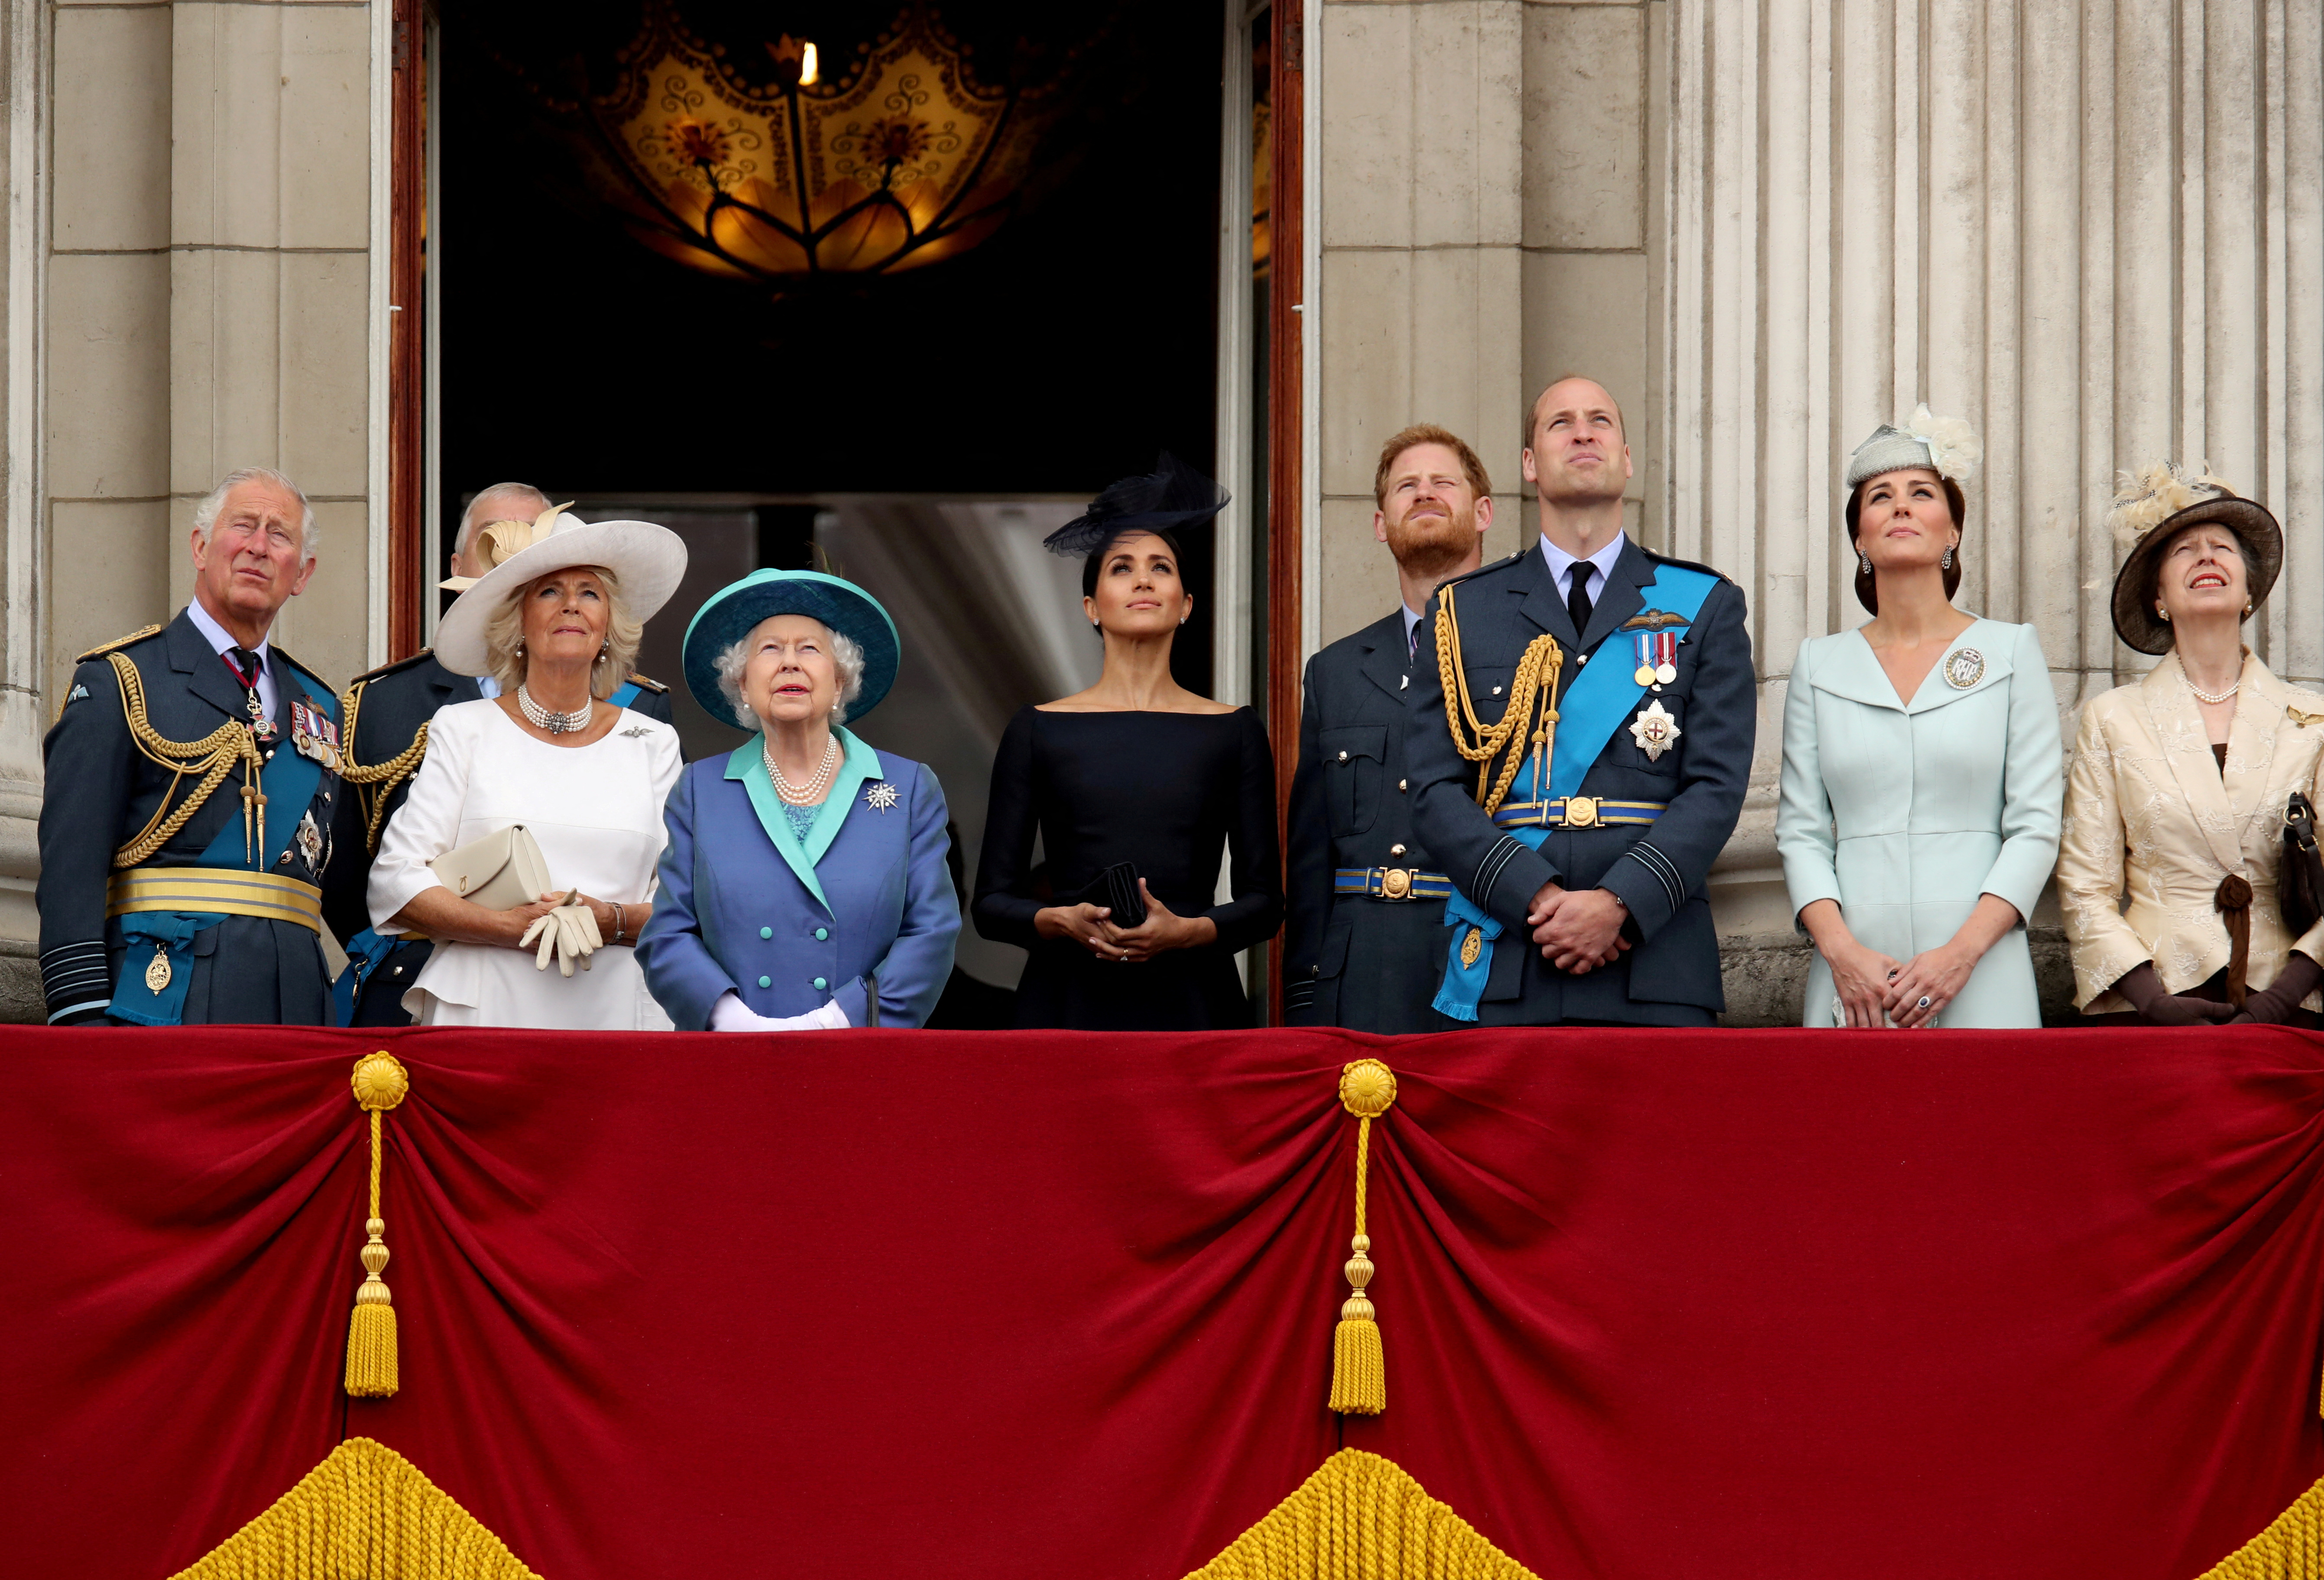 El príncipe Carlos, la duquesa de Cornualles, la reina Isabel,  la duquesa de Sussex, el príncipe Harry, el príncipe William, la duquesa de Cambridge y la princesa Ana en el balcón del Palacio de Buckingham en el centenario de la Royal Air Force en el centro de Londres, Gran Bretaña, el 10 de julio de 2018 (Reuters)